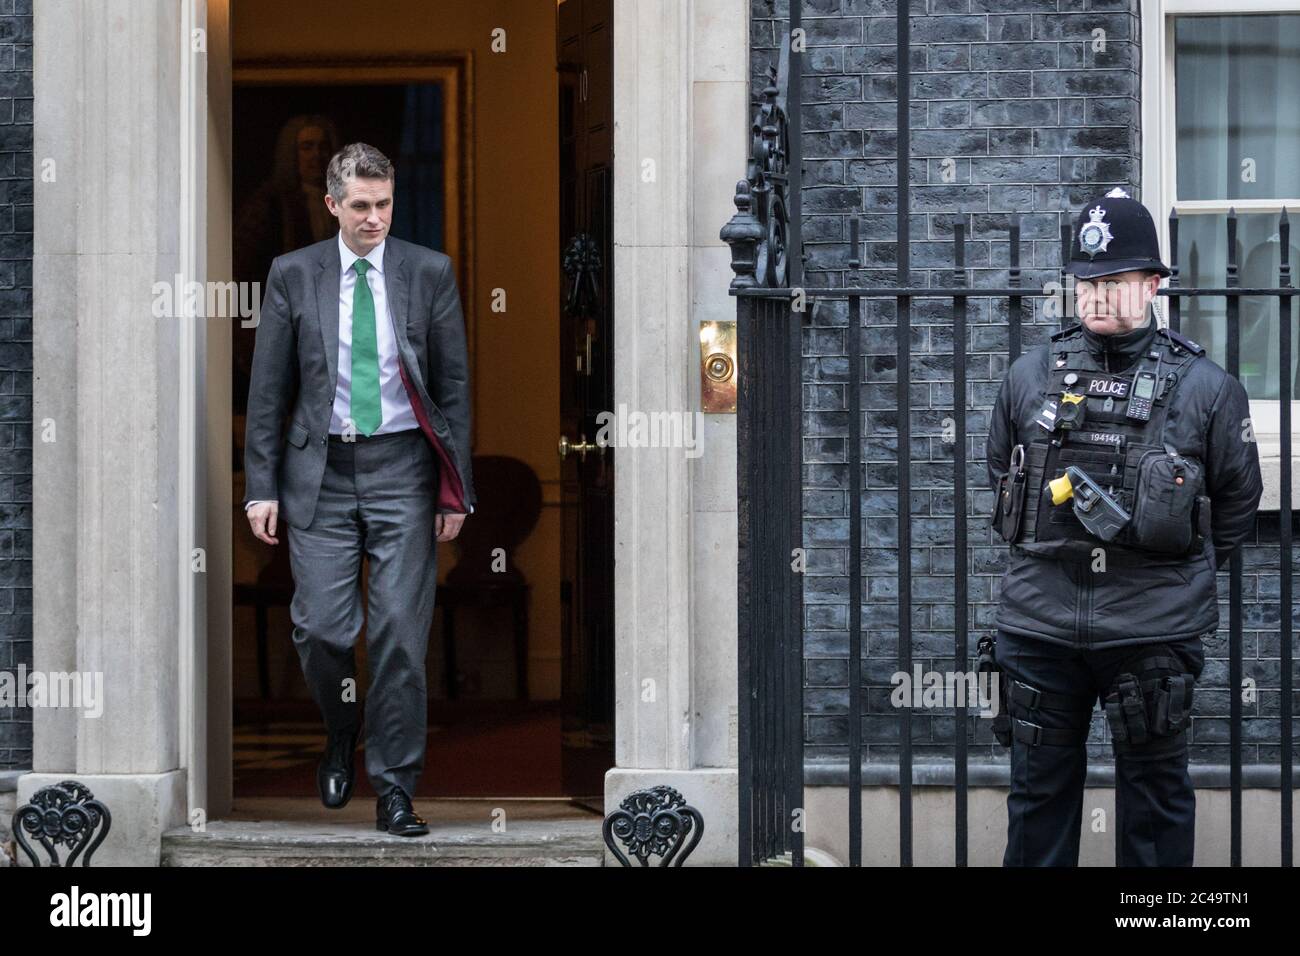 Gavin Williamson, MP, Staatssekretär für Bildung, Politiker der britischen Konservativen Partei, verlässt die Downing Street 10, London Stockfoto